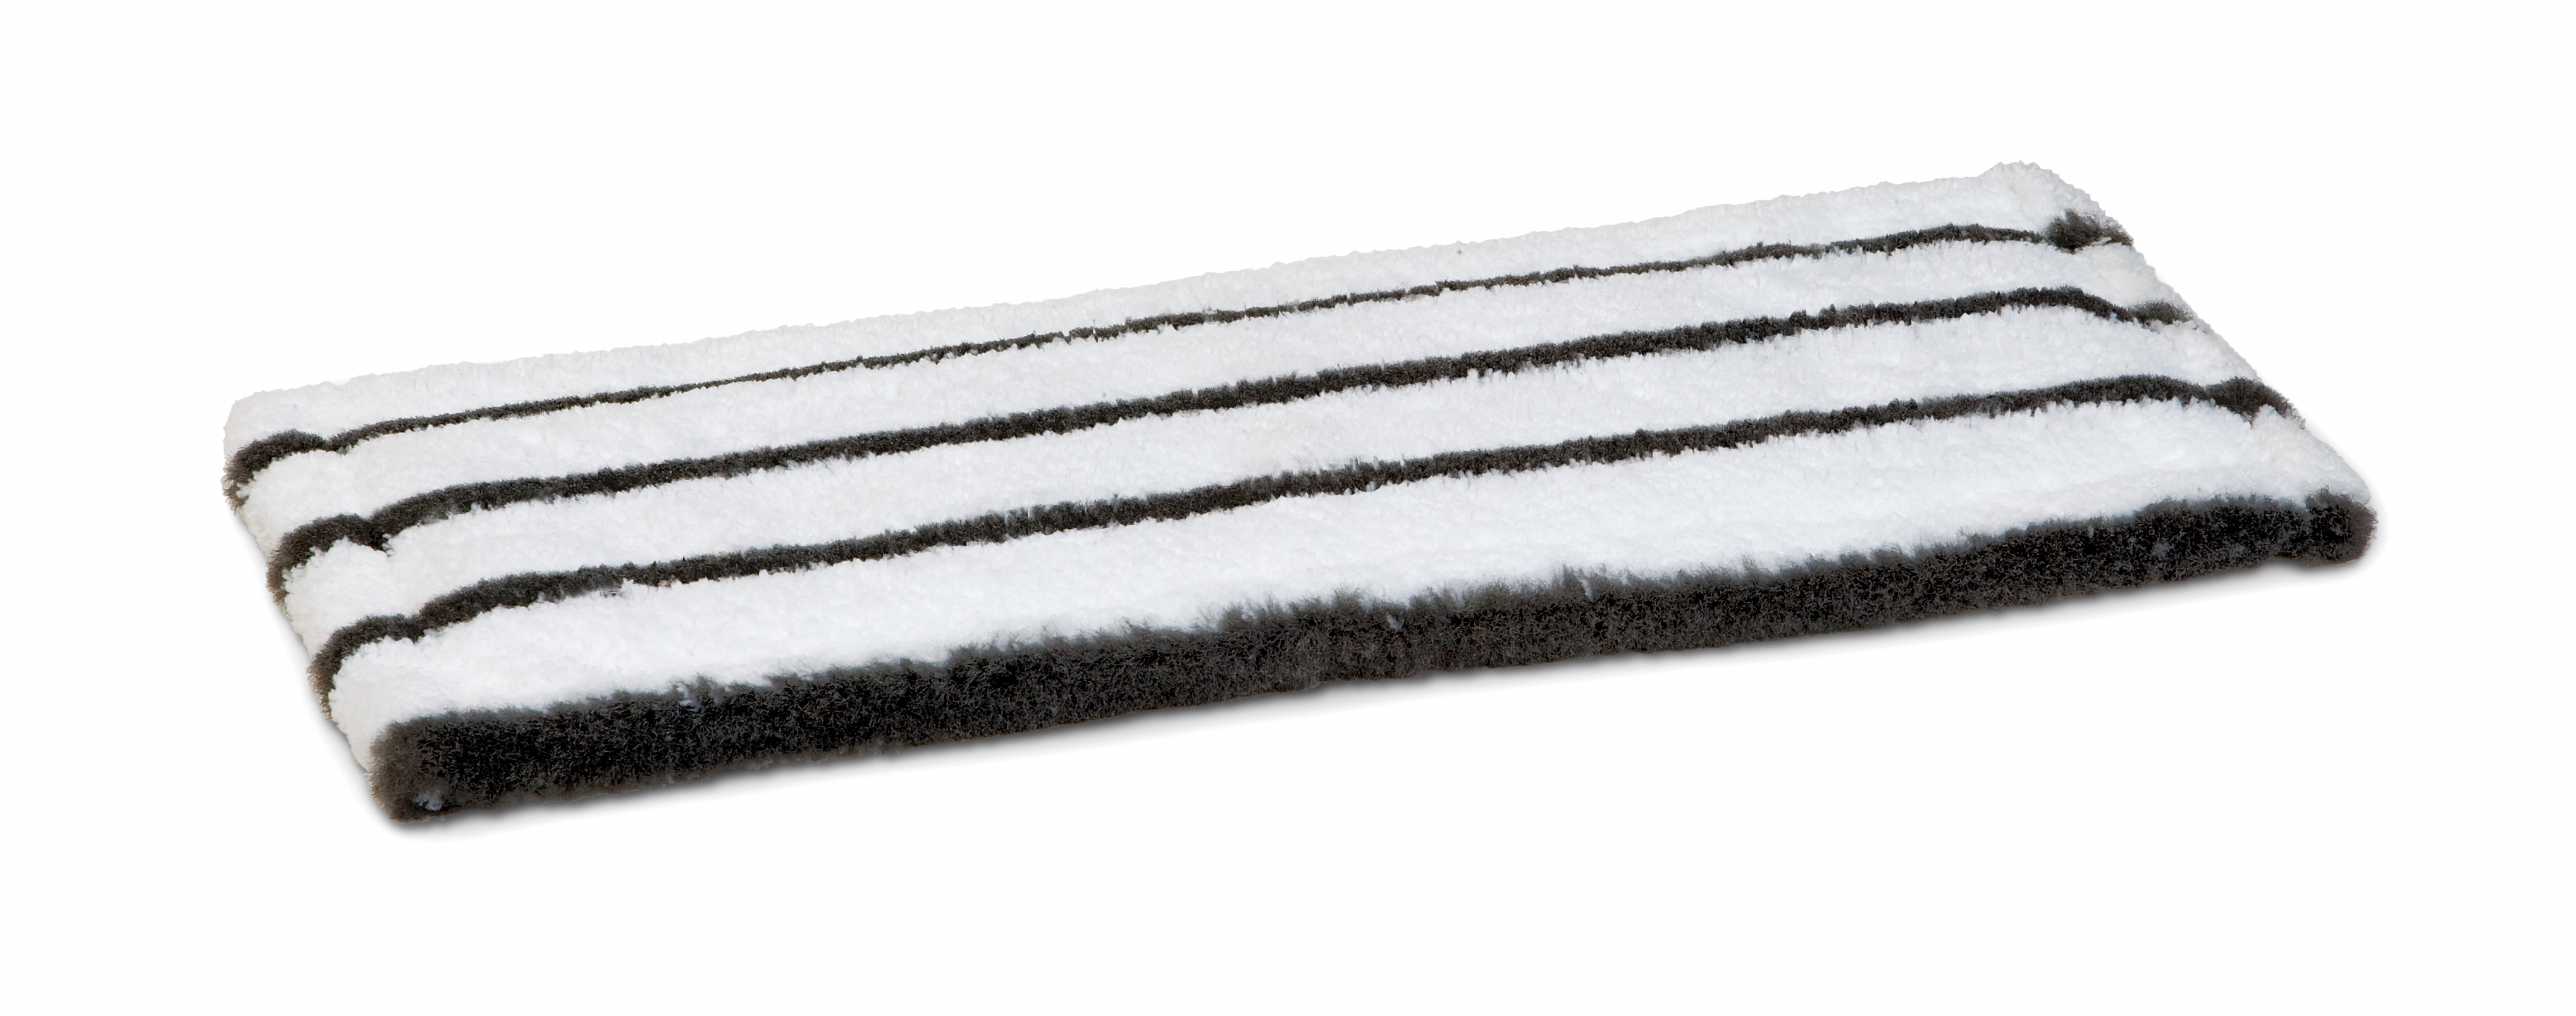 Microfasermopp Profi, weiß/grau mit grauen Borsten, 50 cm